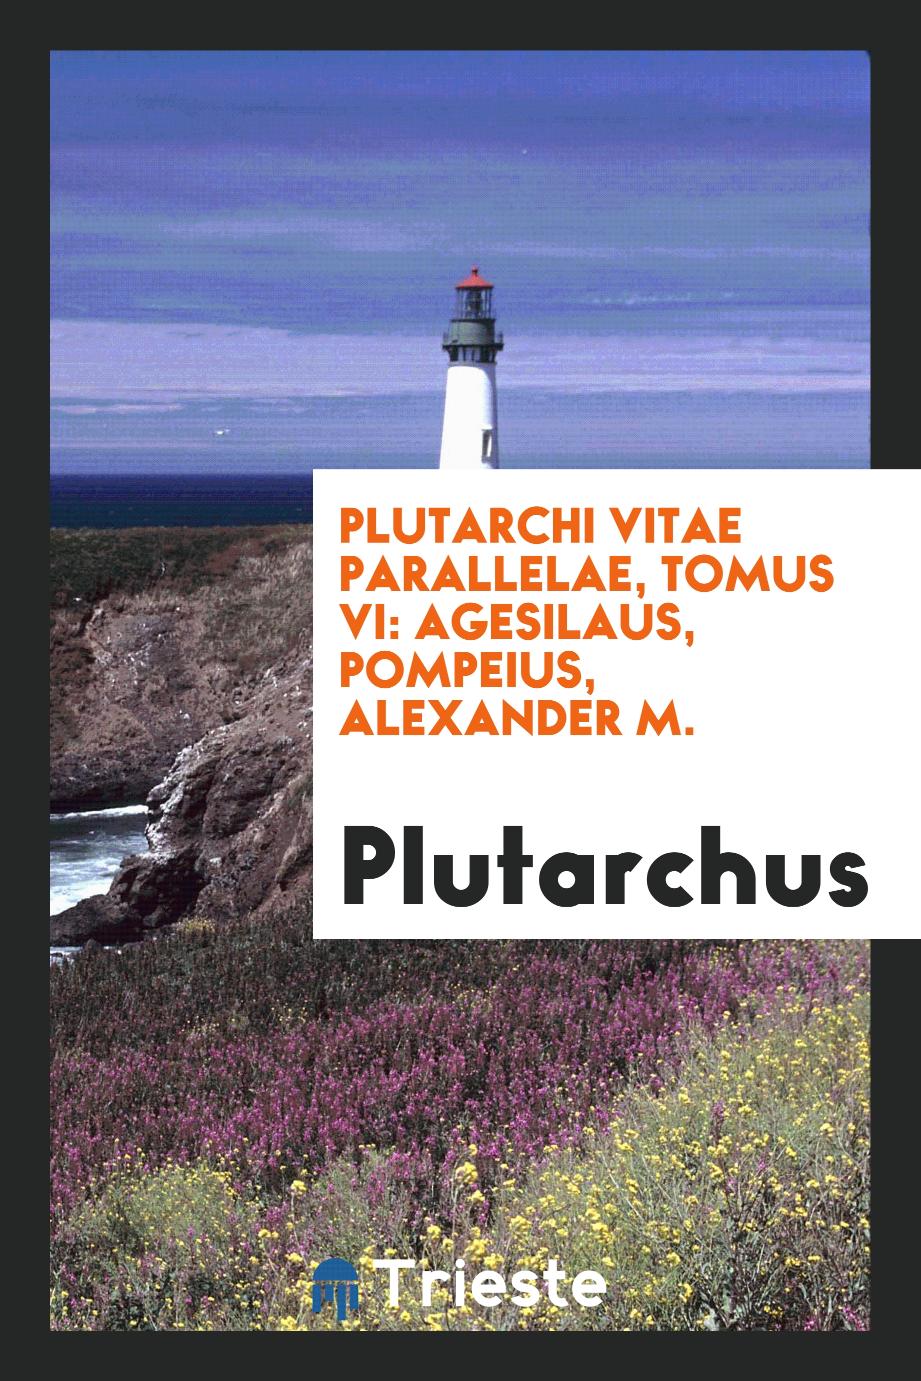 Plutarchi Vitae parallelae, tomus VI: Agesilaus, Pompeius, Alexander M.